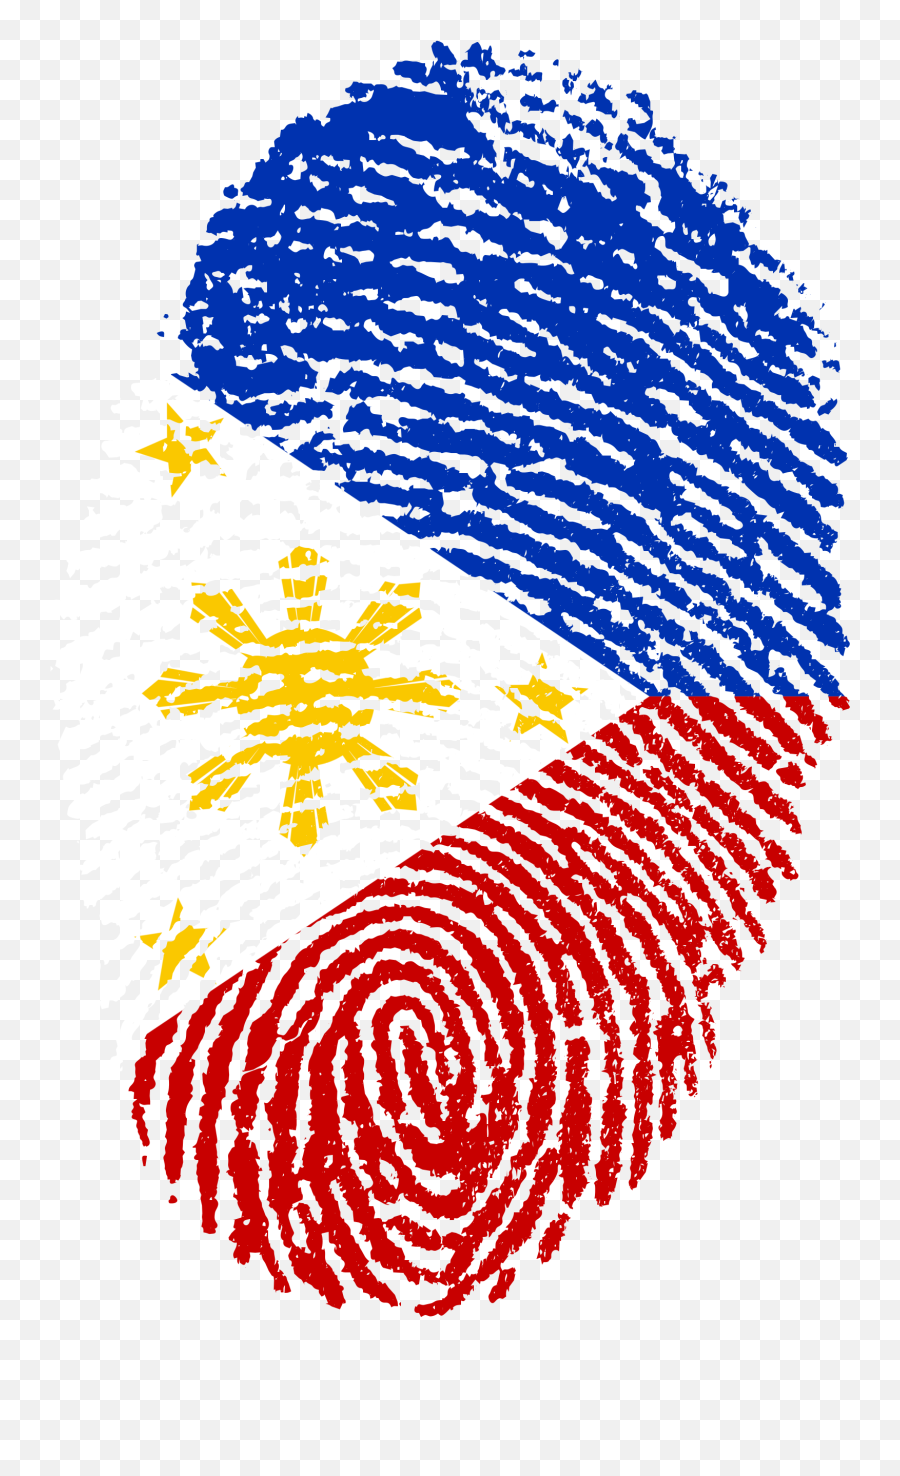 Fingerprint Of Philippines Flag Clipart - Philippine Flag Fingerprint Emoji,Flag Clipart